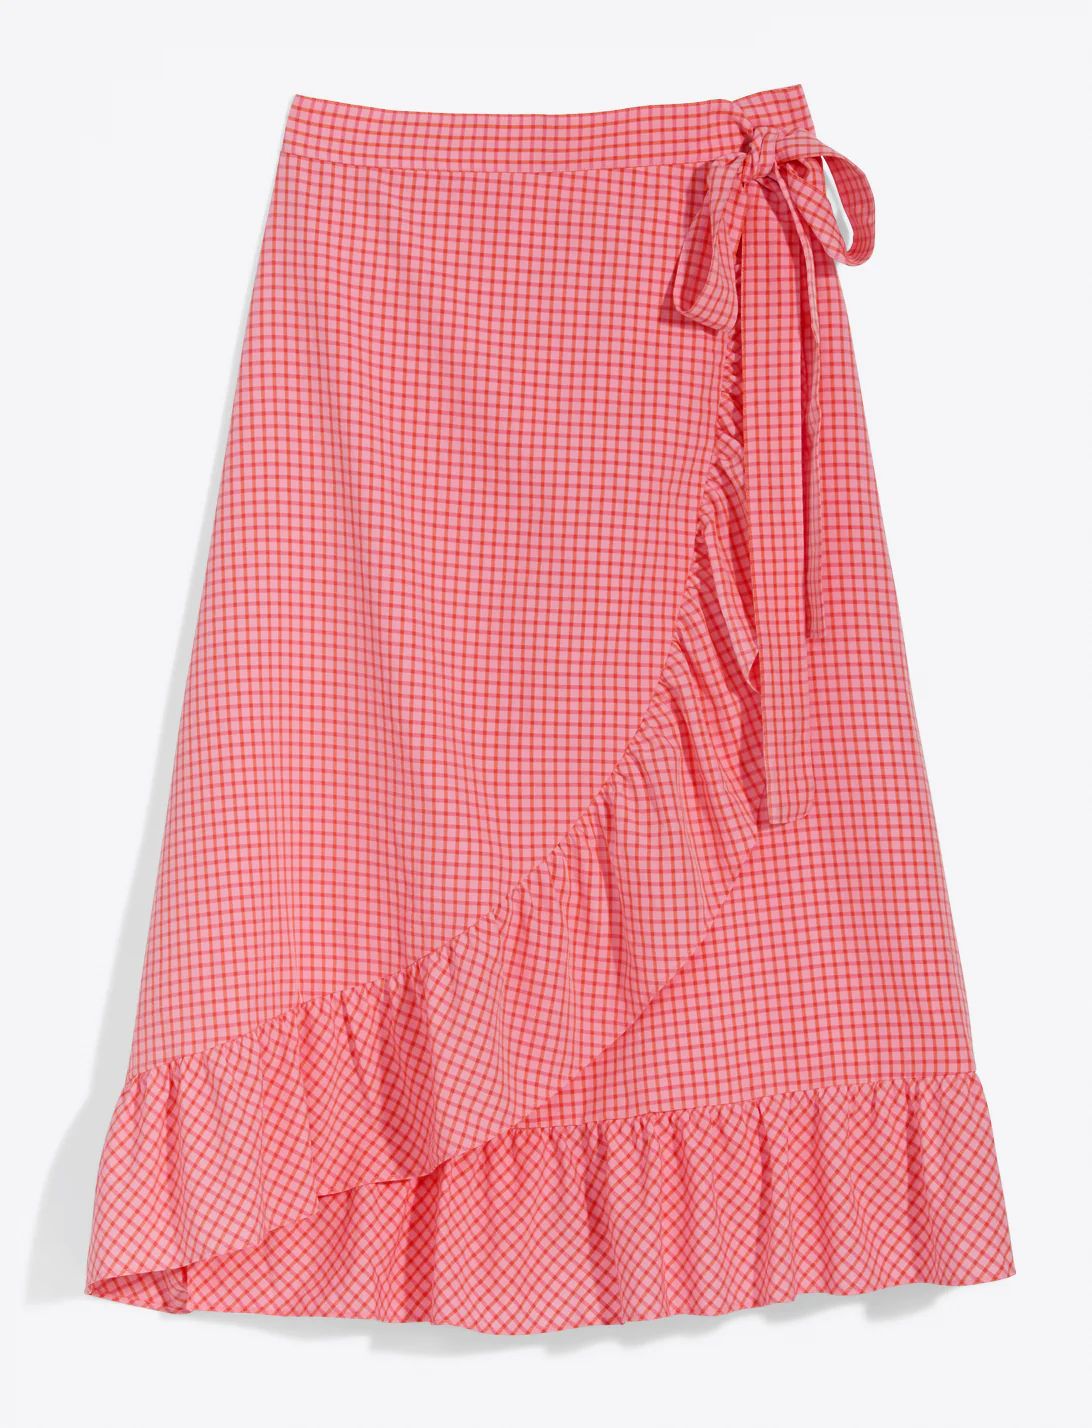 Tie Waist Skirt in Gingham Seersucker | Draper James (US)